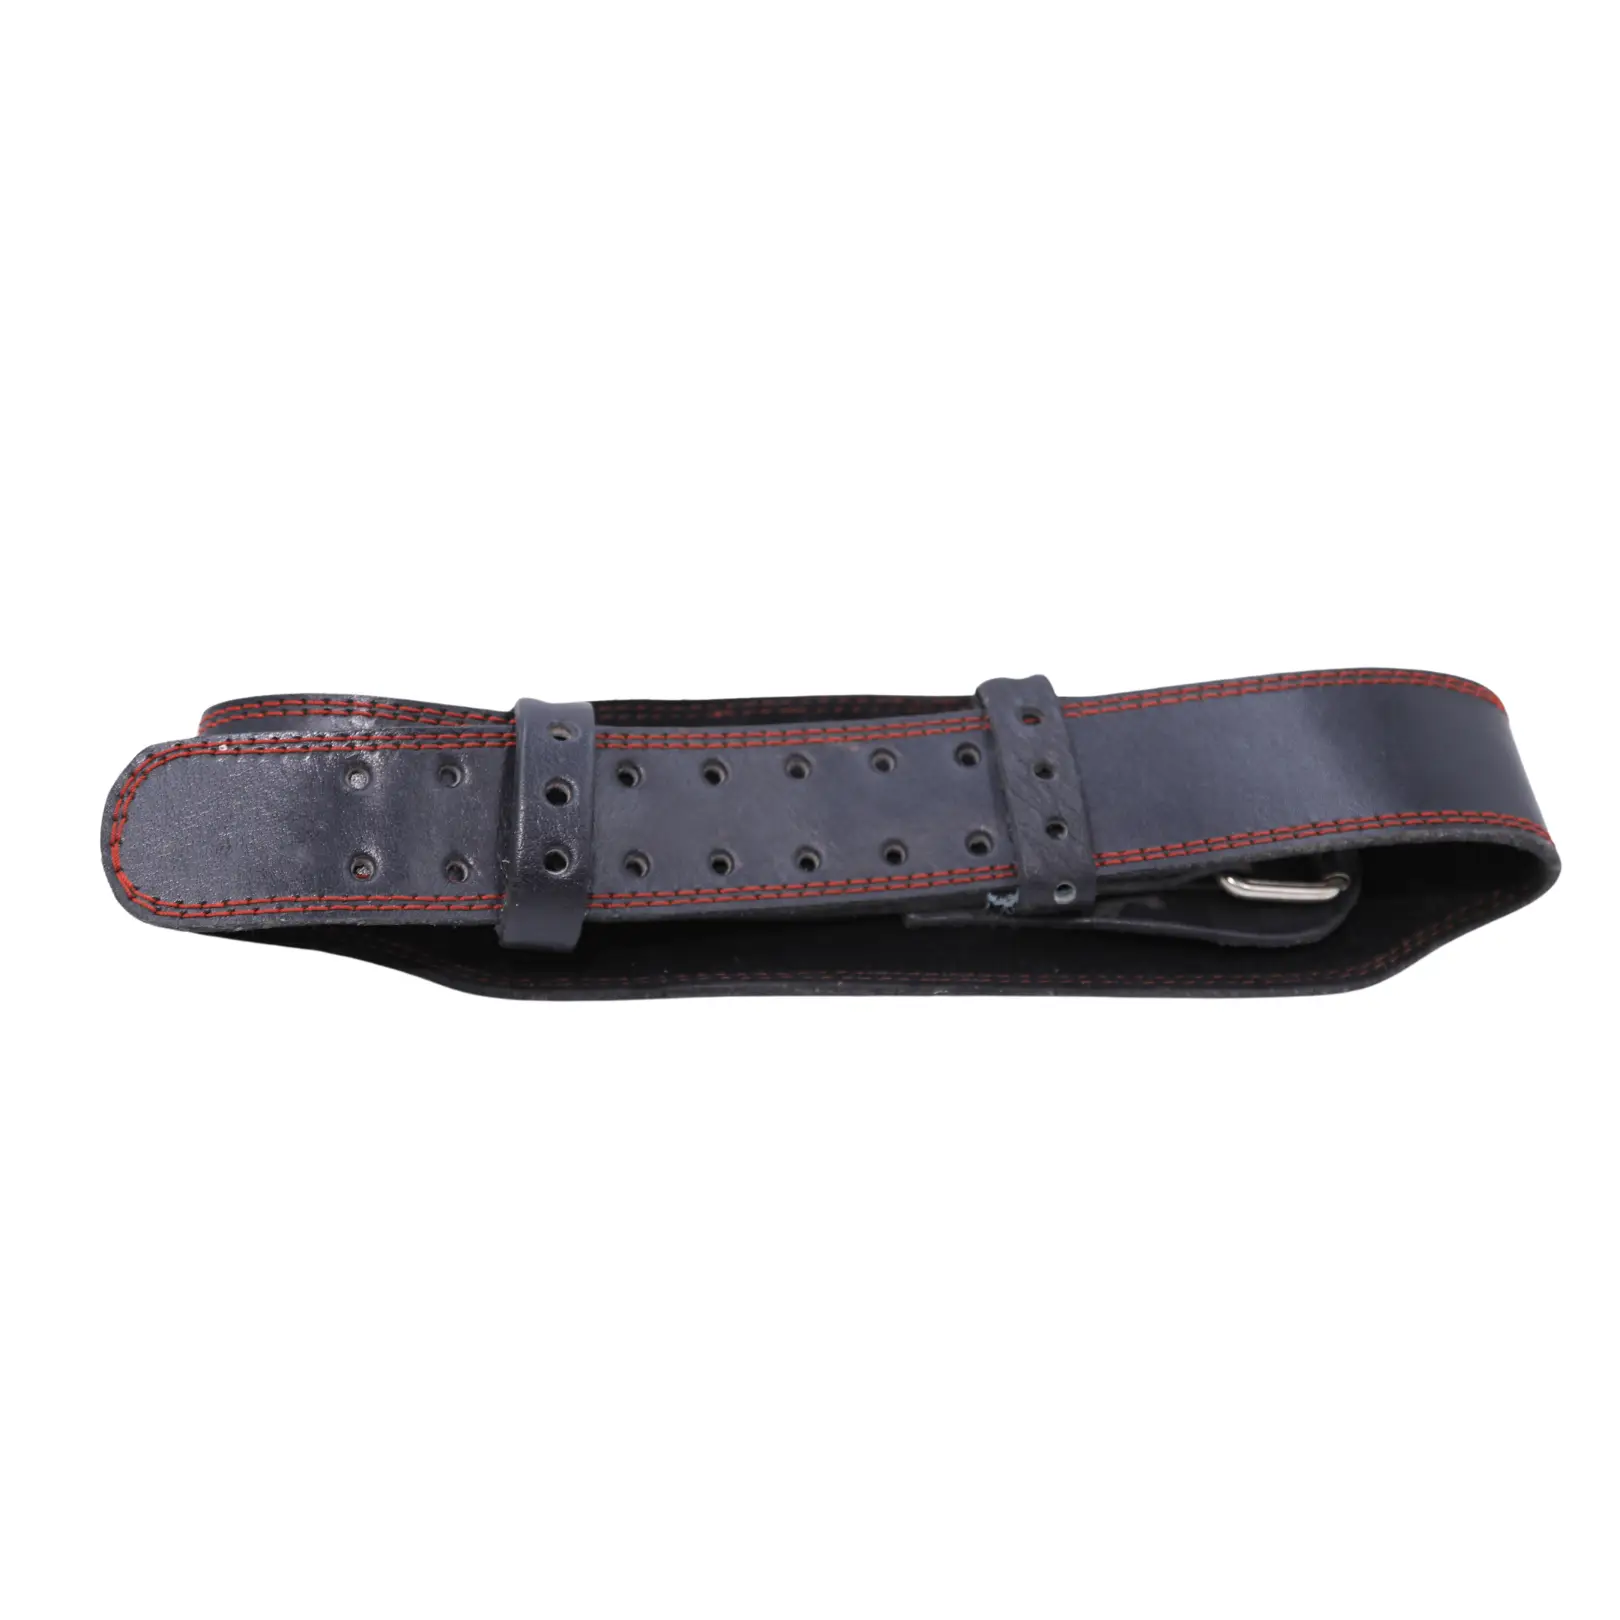 Nutrascia Gym Leather Back Belt